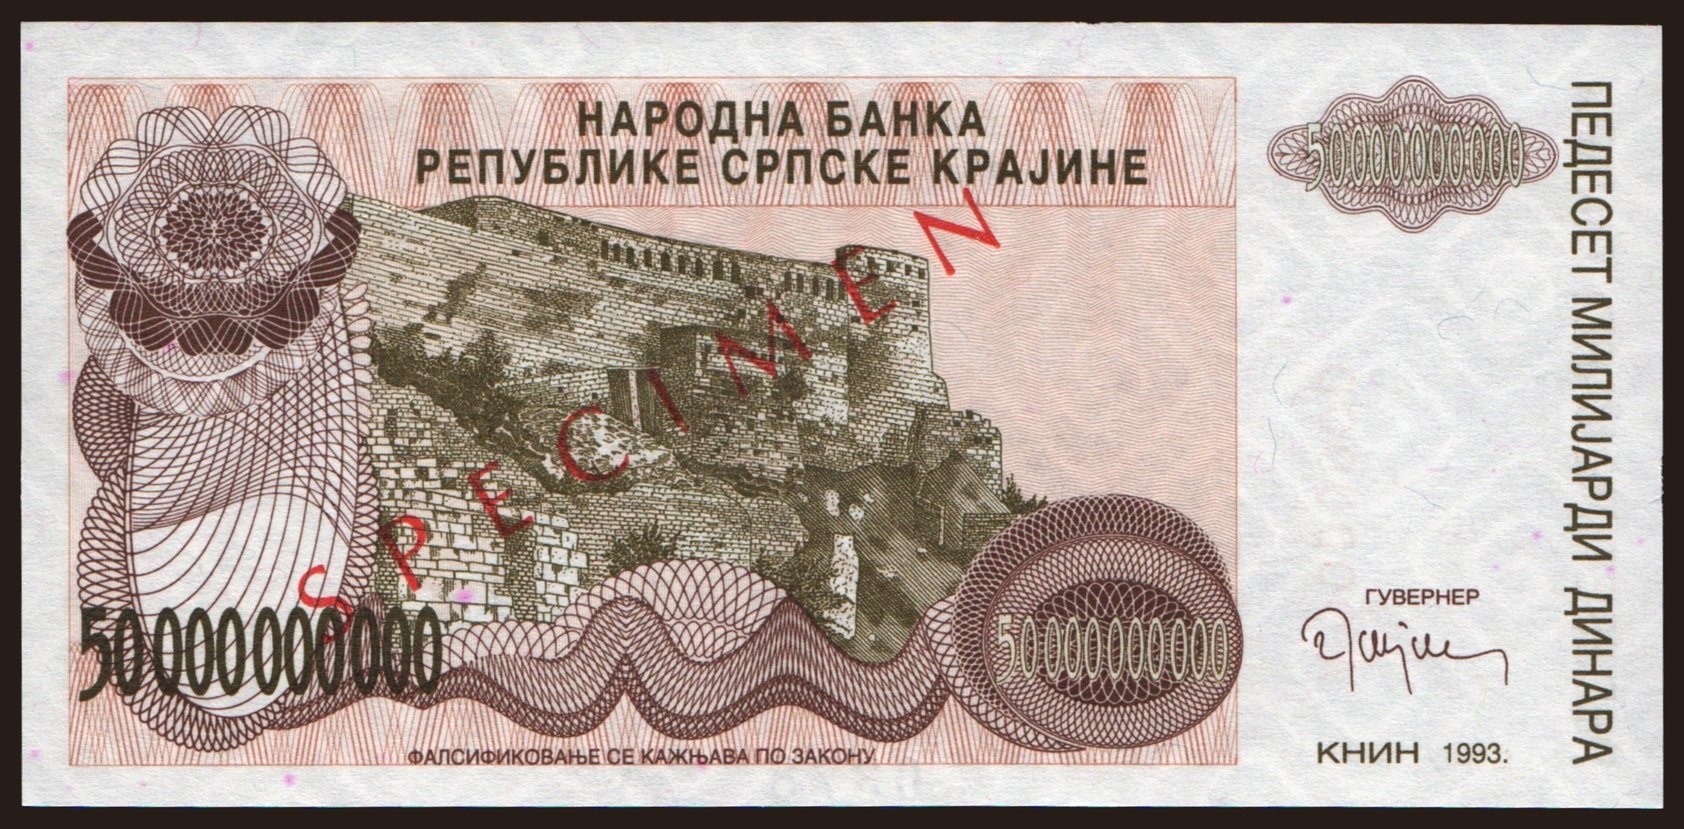 RSK, 50.000.000.000 dinara, 1993, SPECIMEN